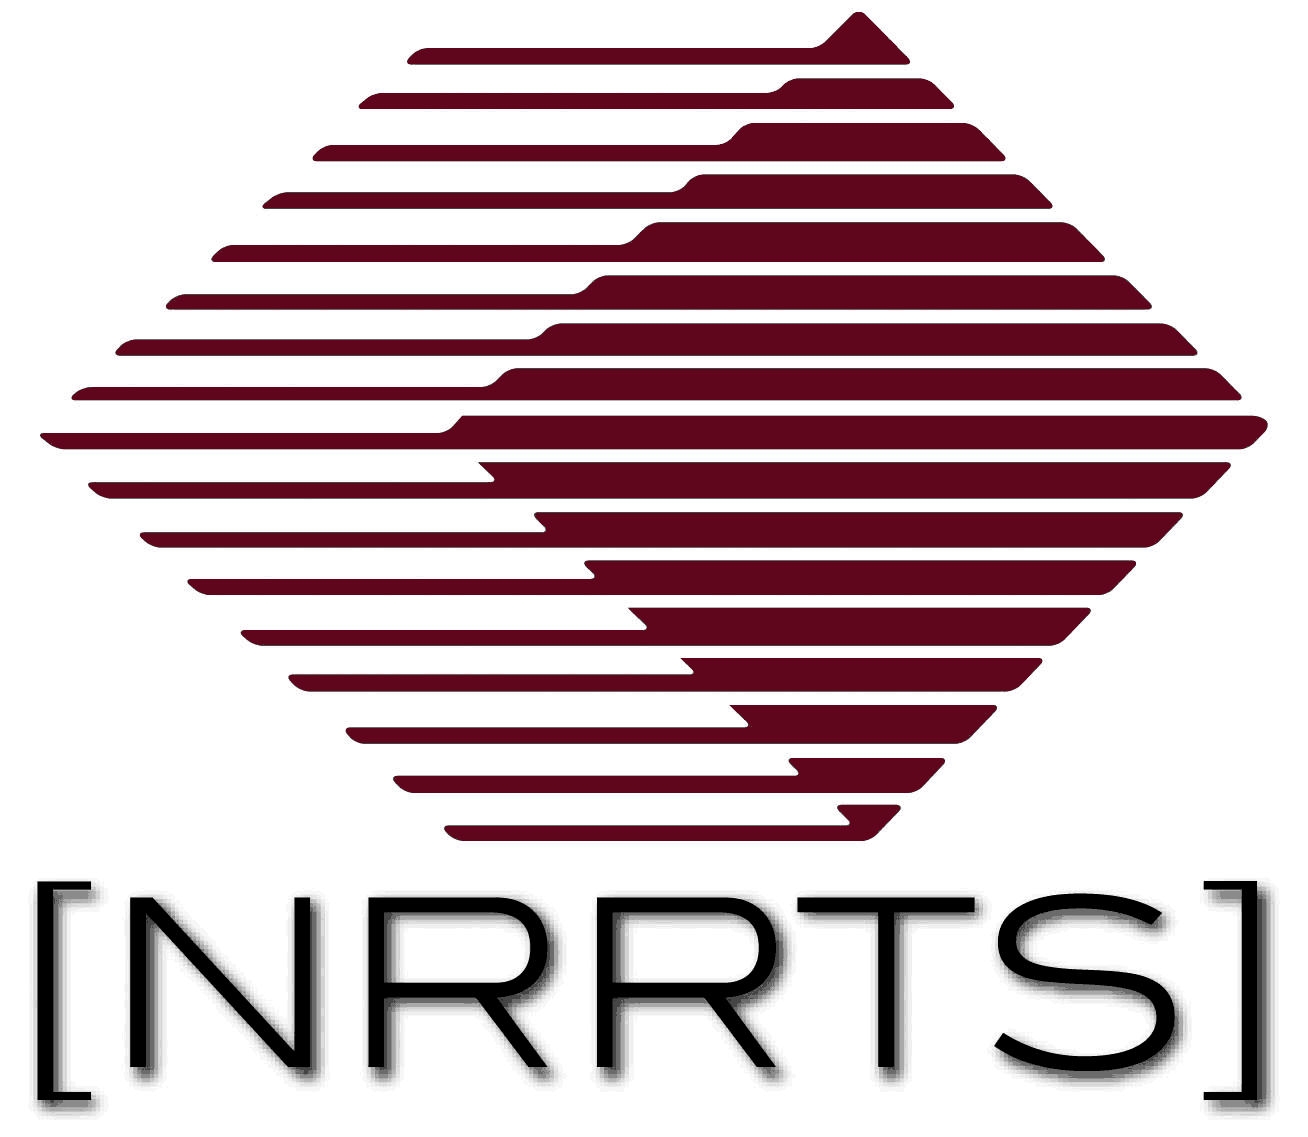 Image of the NRRTS logo.